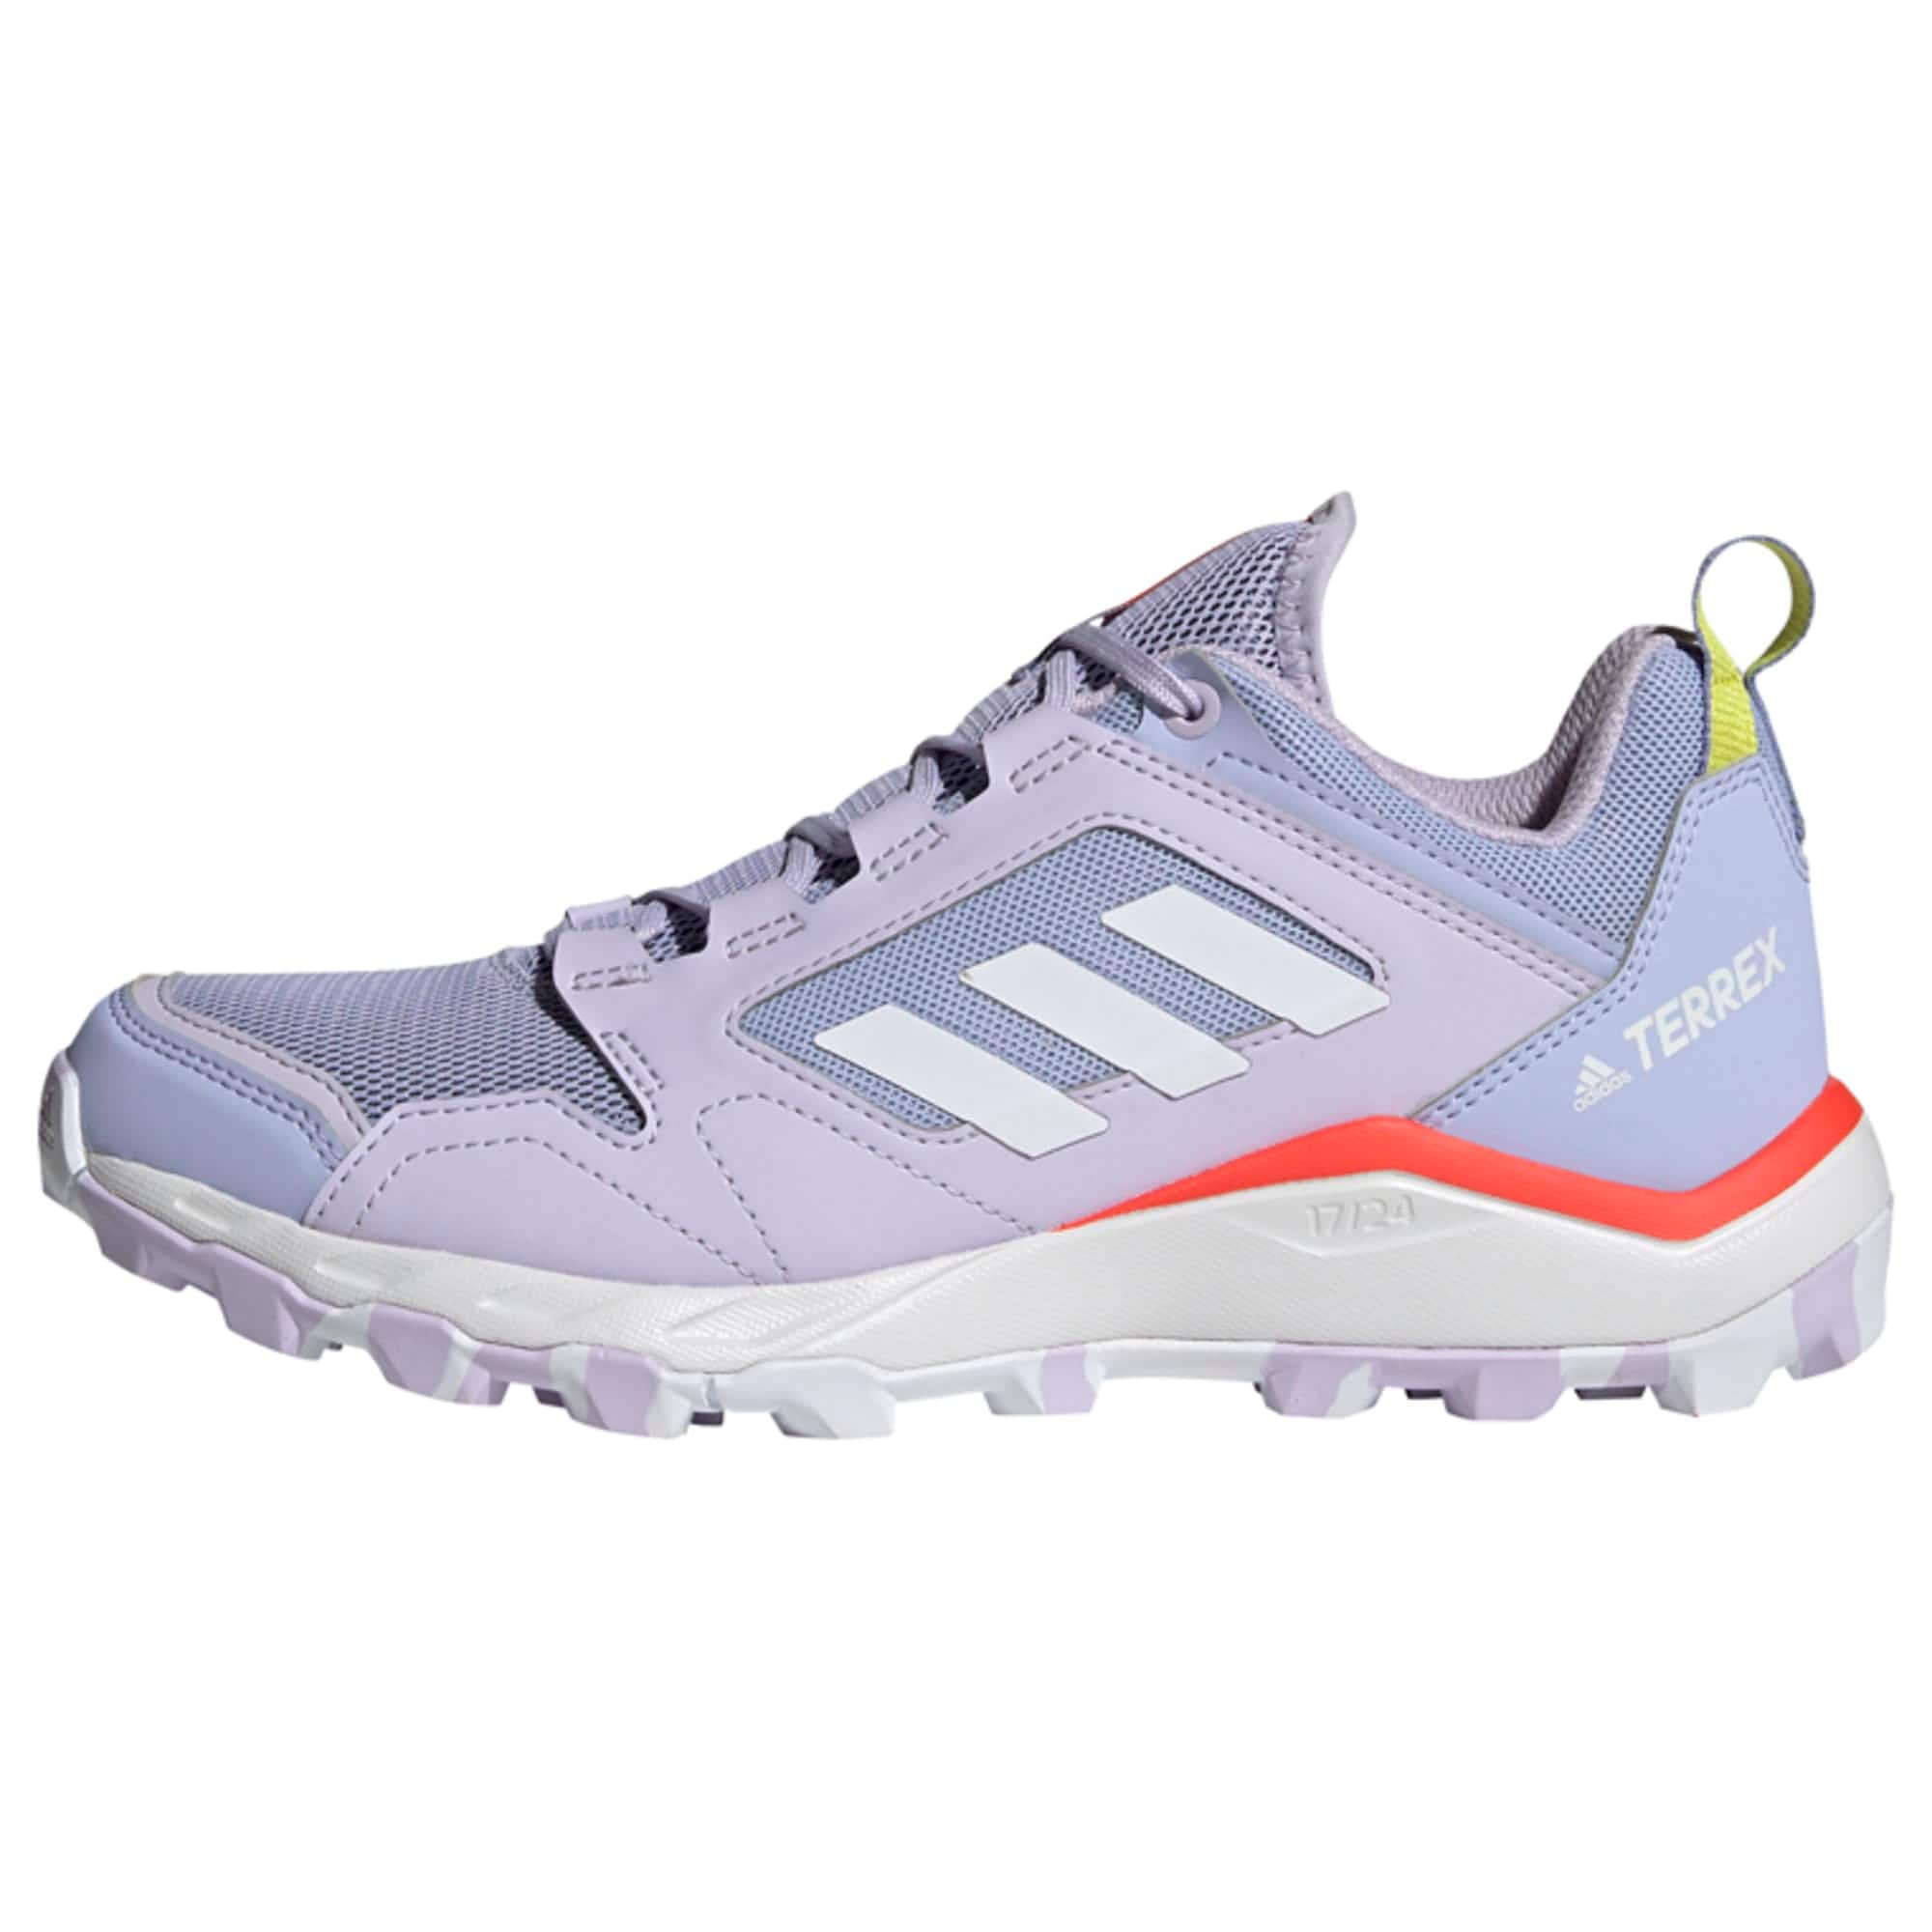 adidas Terrex Bėgimo batai 'Agravic' šviesiai violetinė / balta / oranžinė